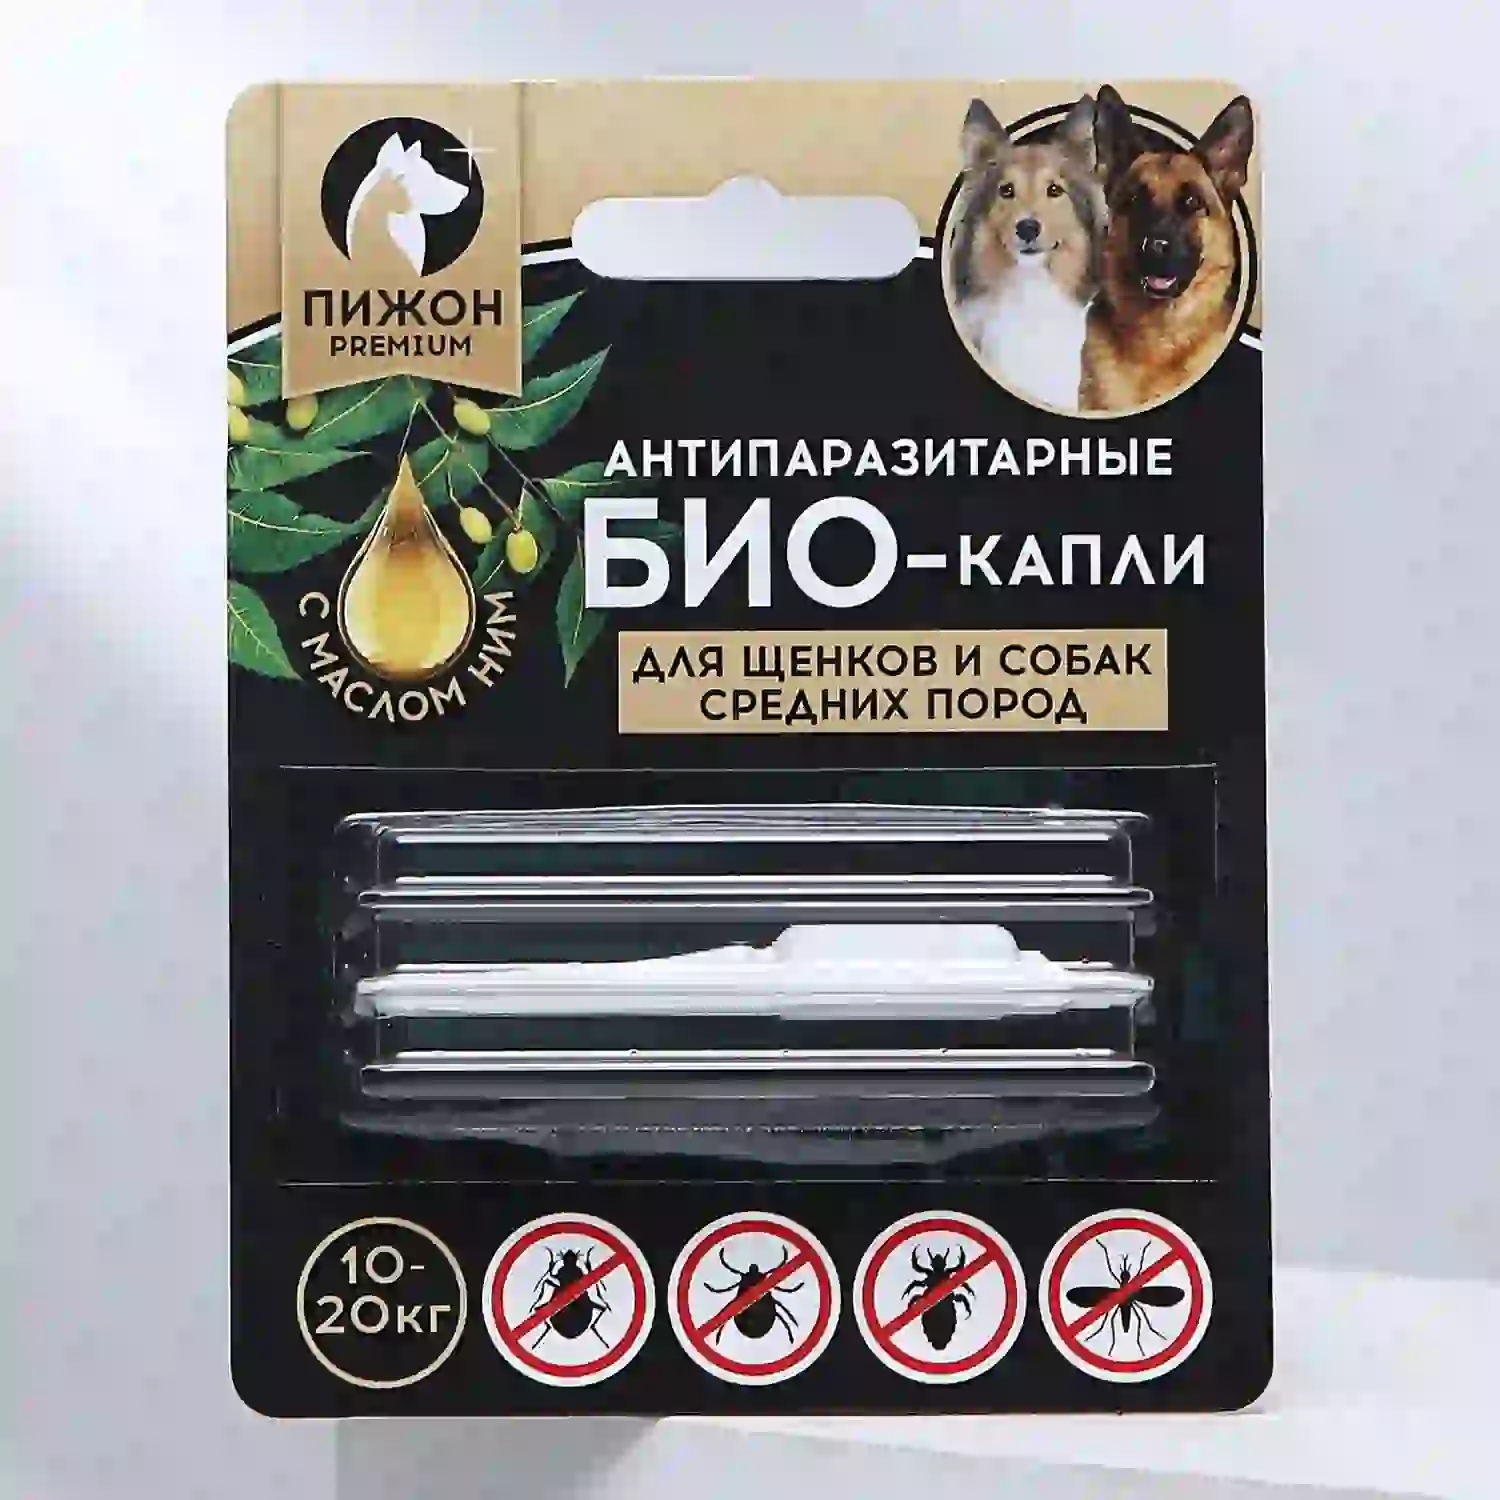 Антипаразитарные БИОкапли для щенков и собак средних пород, 10-20кг, 2мл Пижон Premium 5215240